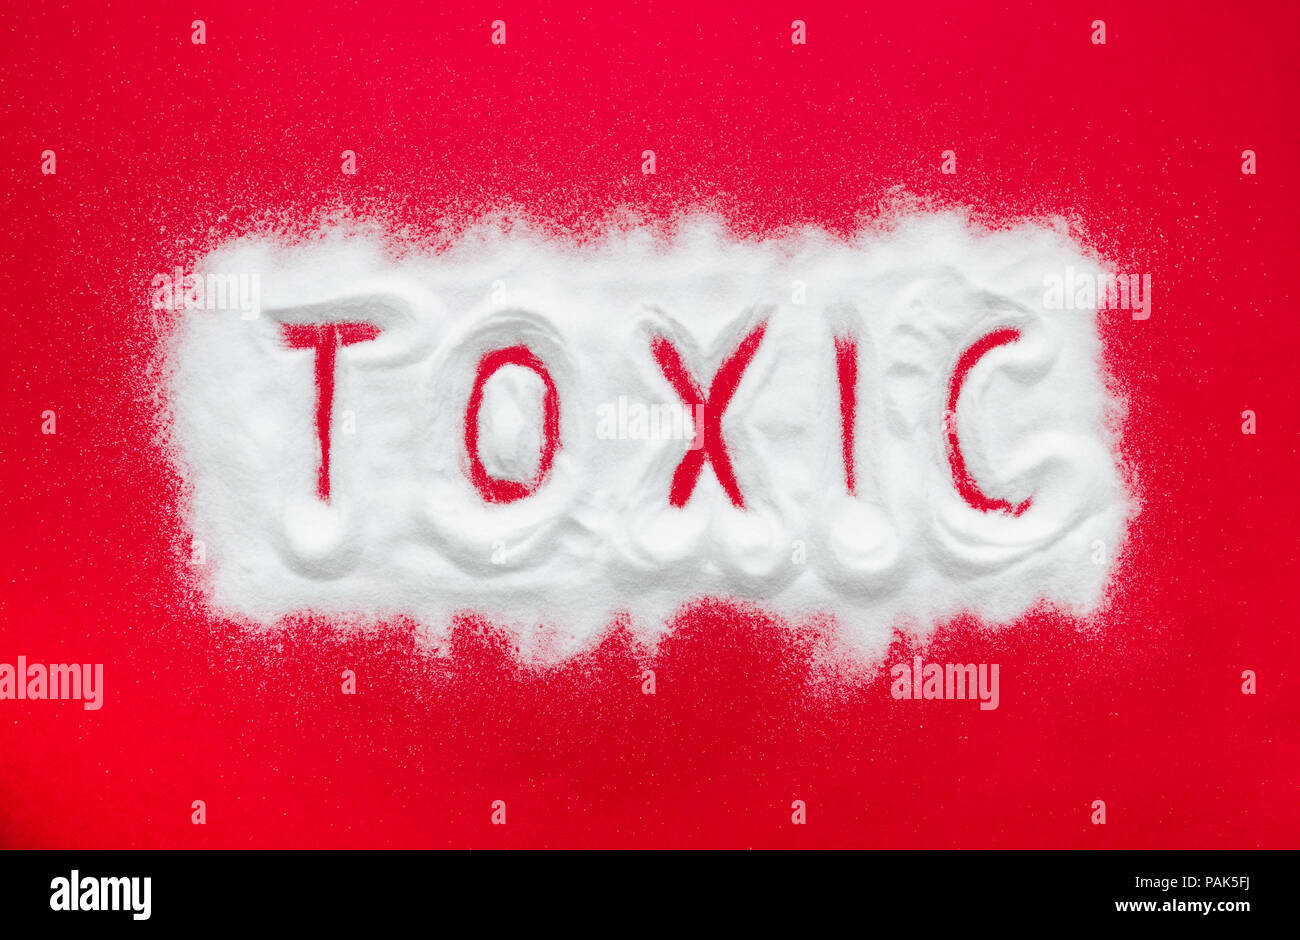 Giftiges Pulver wie Drogen auf einem roten Hintergrund suhhesting Sucht und Drogen Probleme, Probleme und Risiken für Süchtige geschrieben Stockfoto